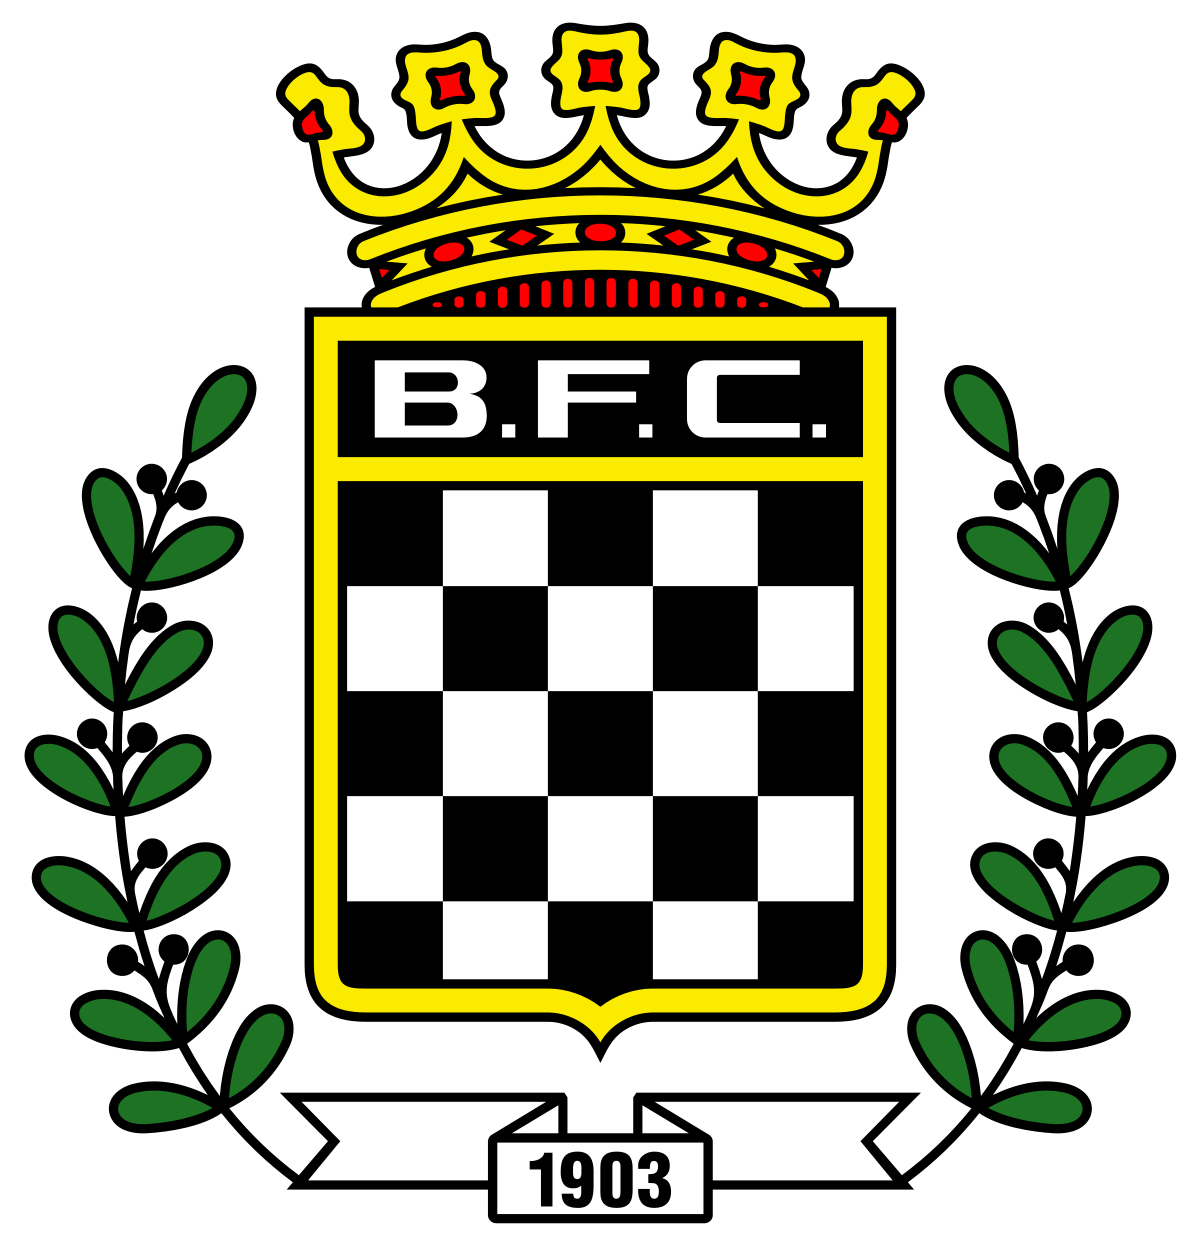 Boavista U-23 logo